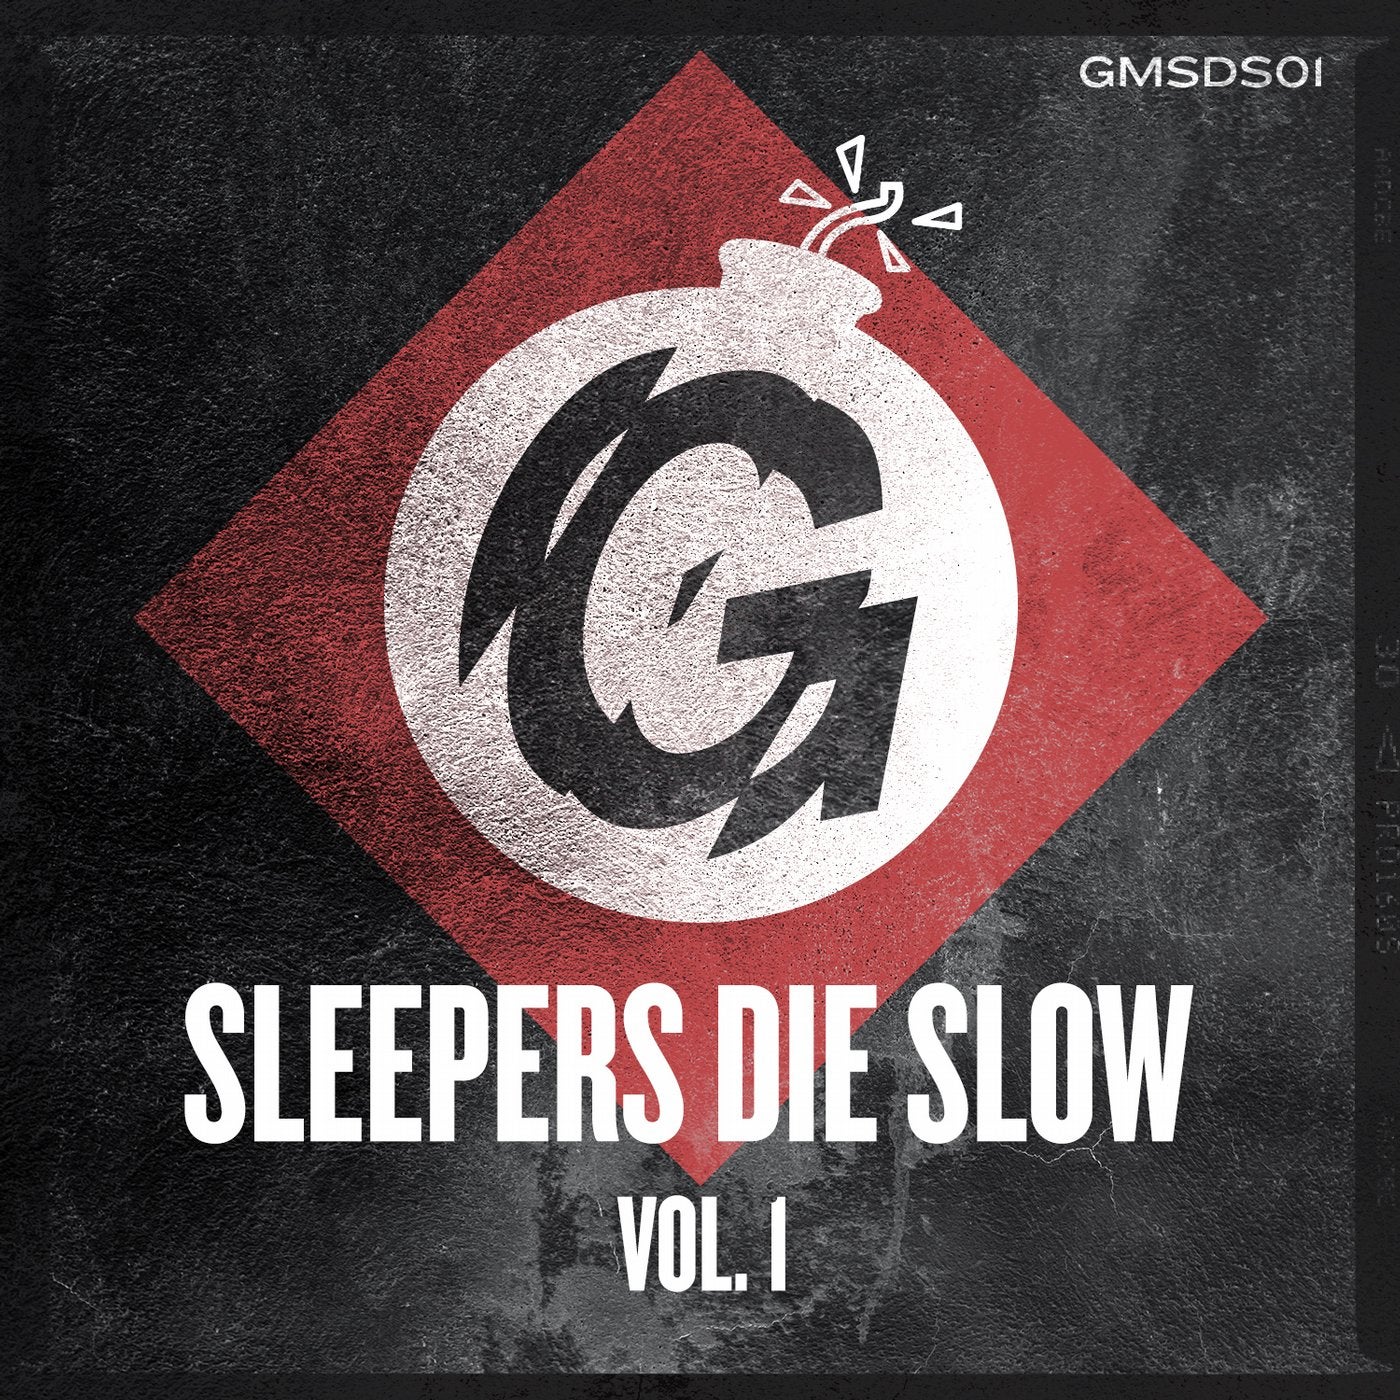 Sleepers Die Slow Vol. 1